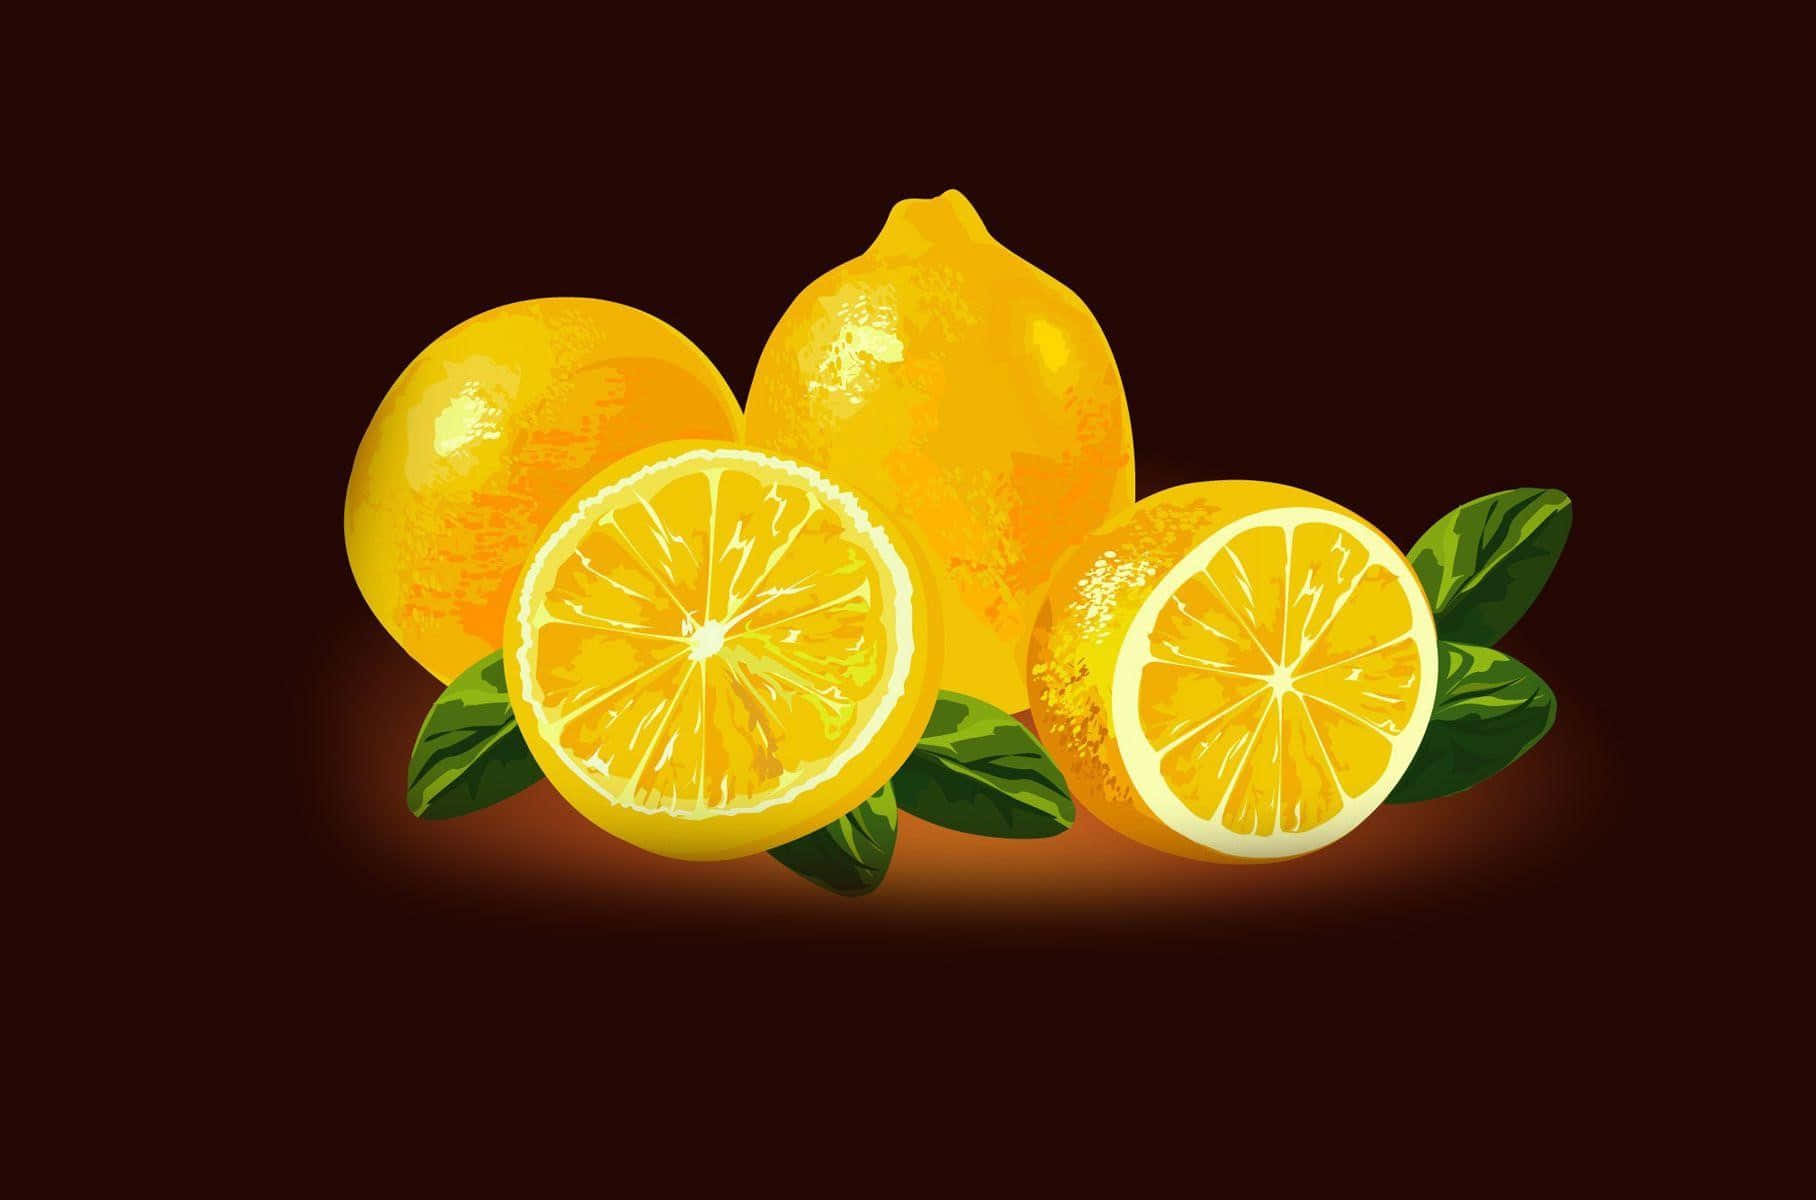 Uppfriskandeläckerhet: En Citron